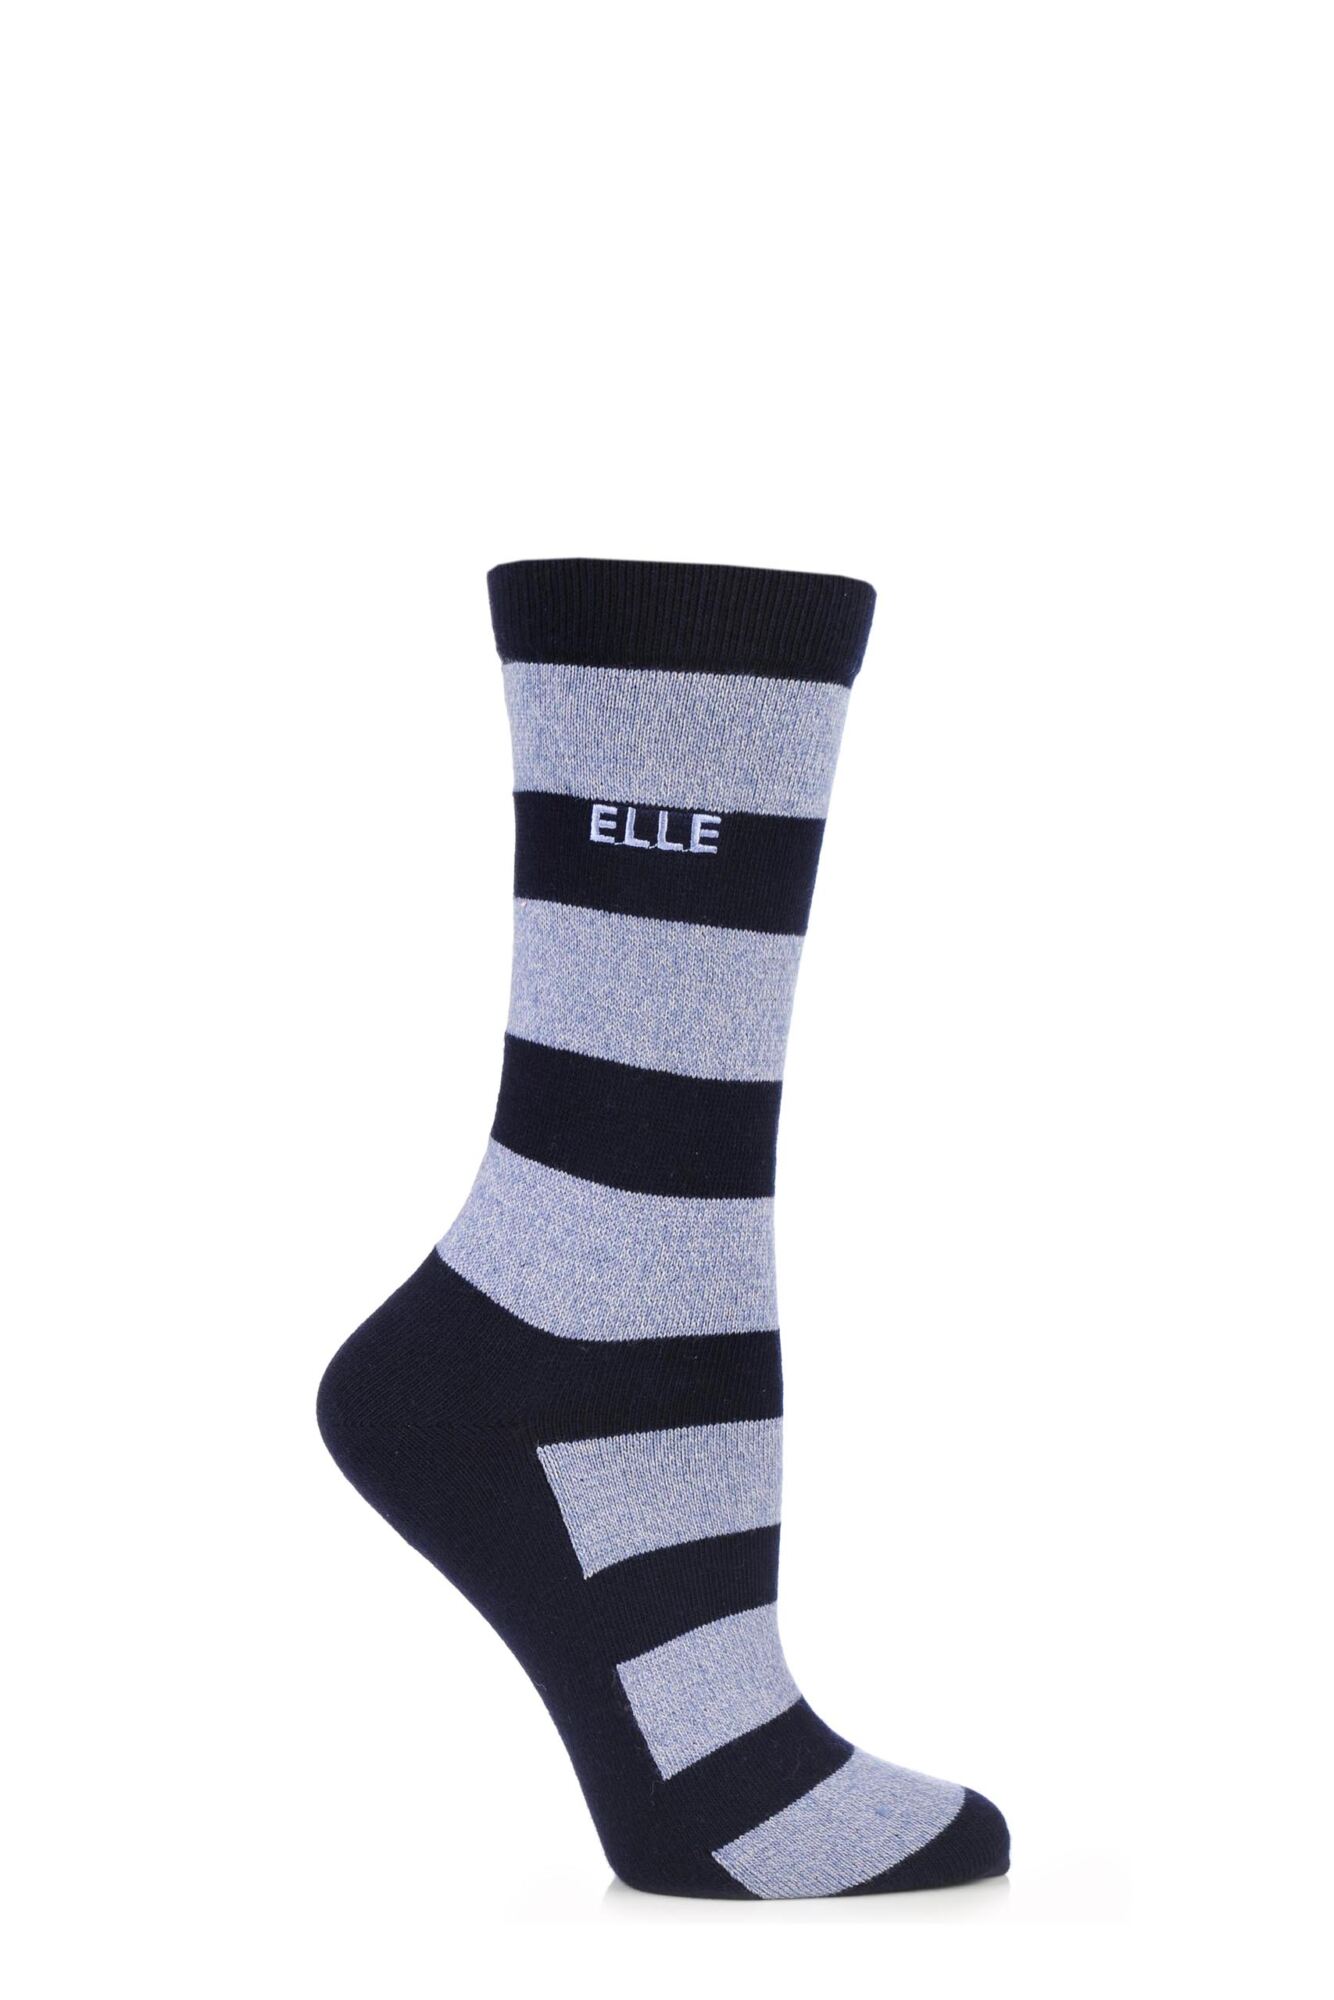 1 Pair Wool and Viscose Striped Socks Ladies - Elle